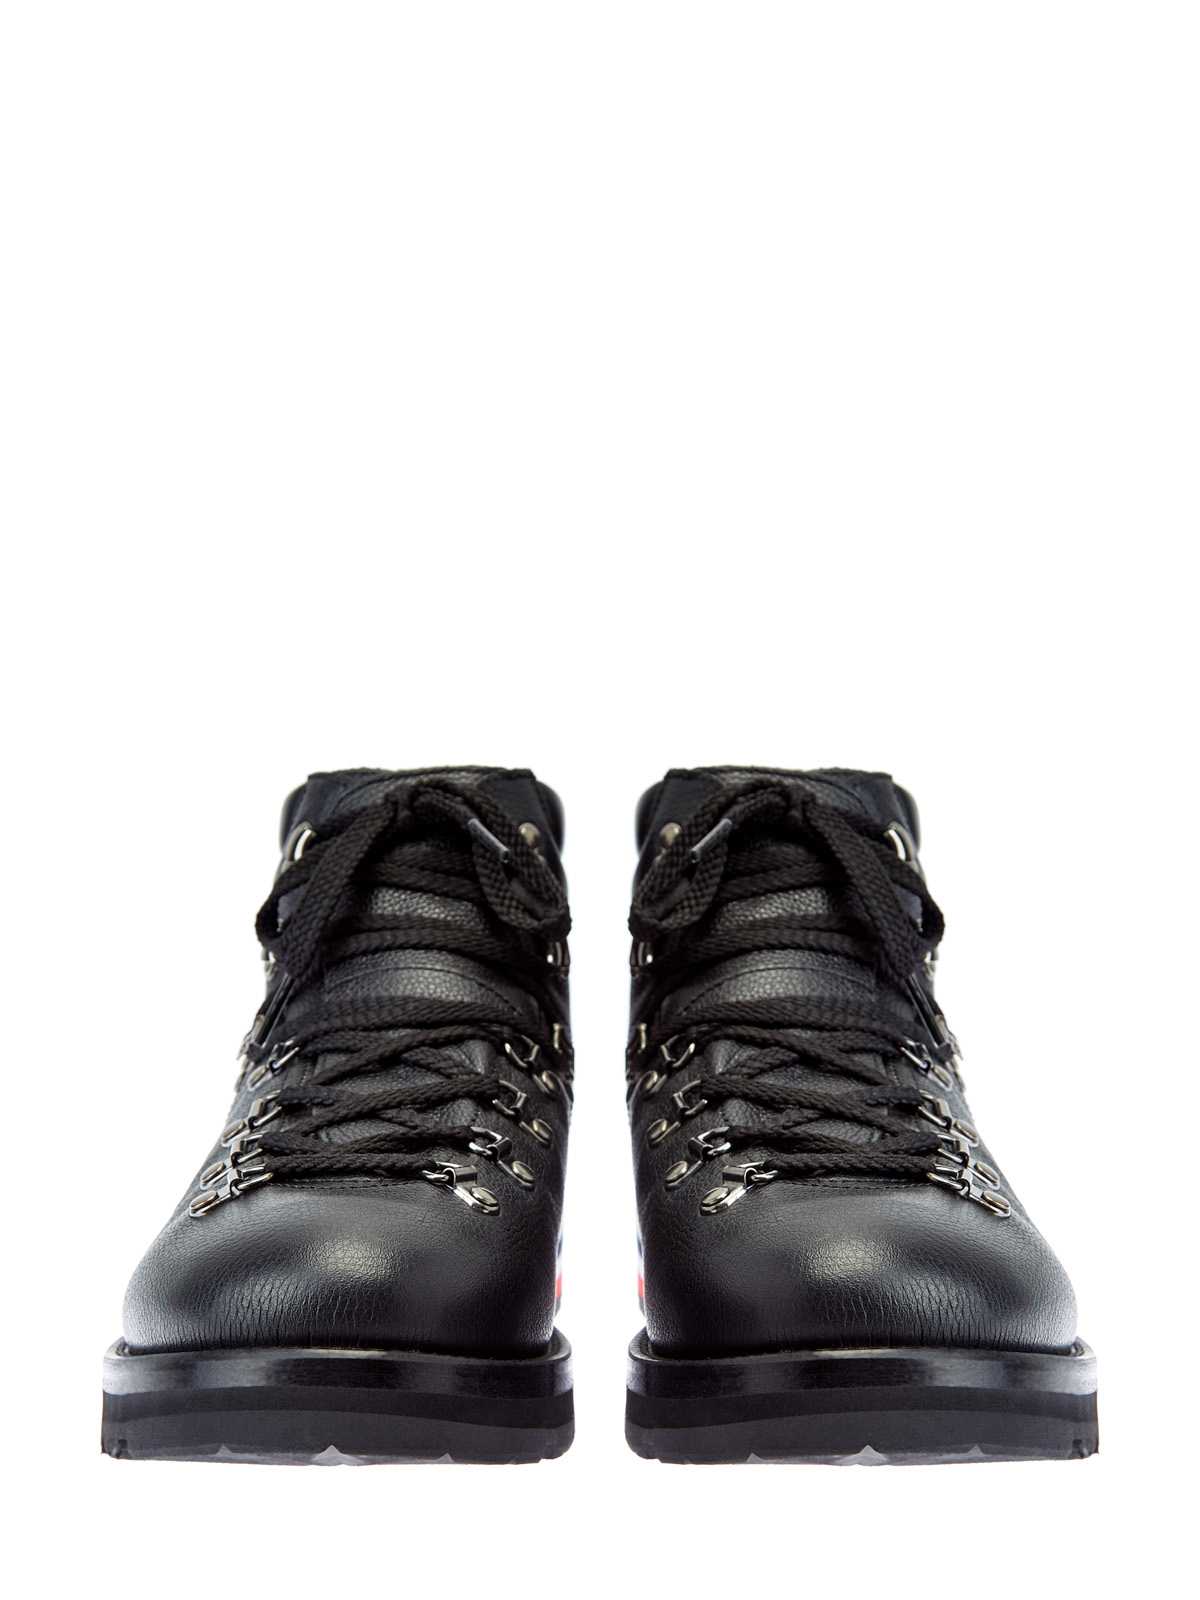 Кожаные ботинки Peak на массивной подошве с протектором MONCLER, цвет черный, размер 41;41.5;42;42.5;43;43.5;44;45 - фото 6